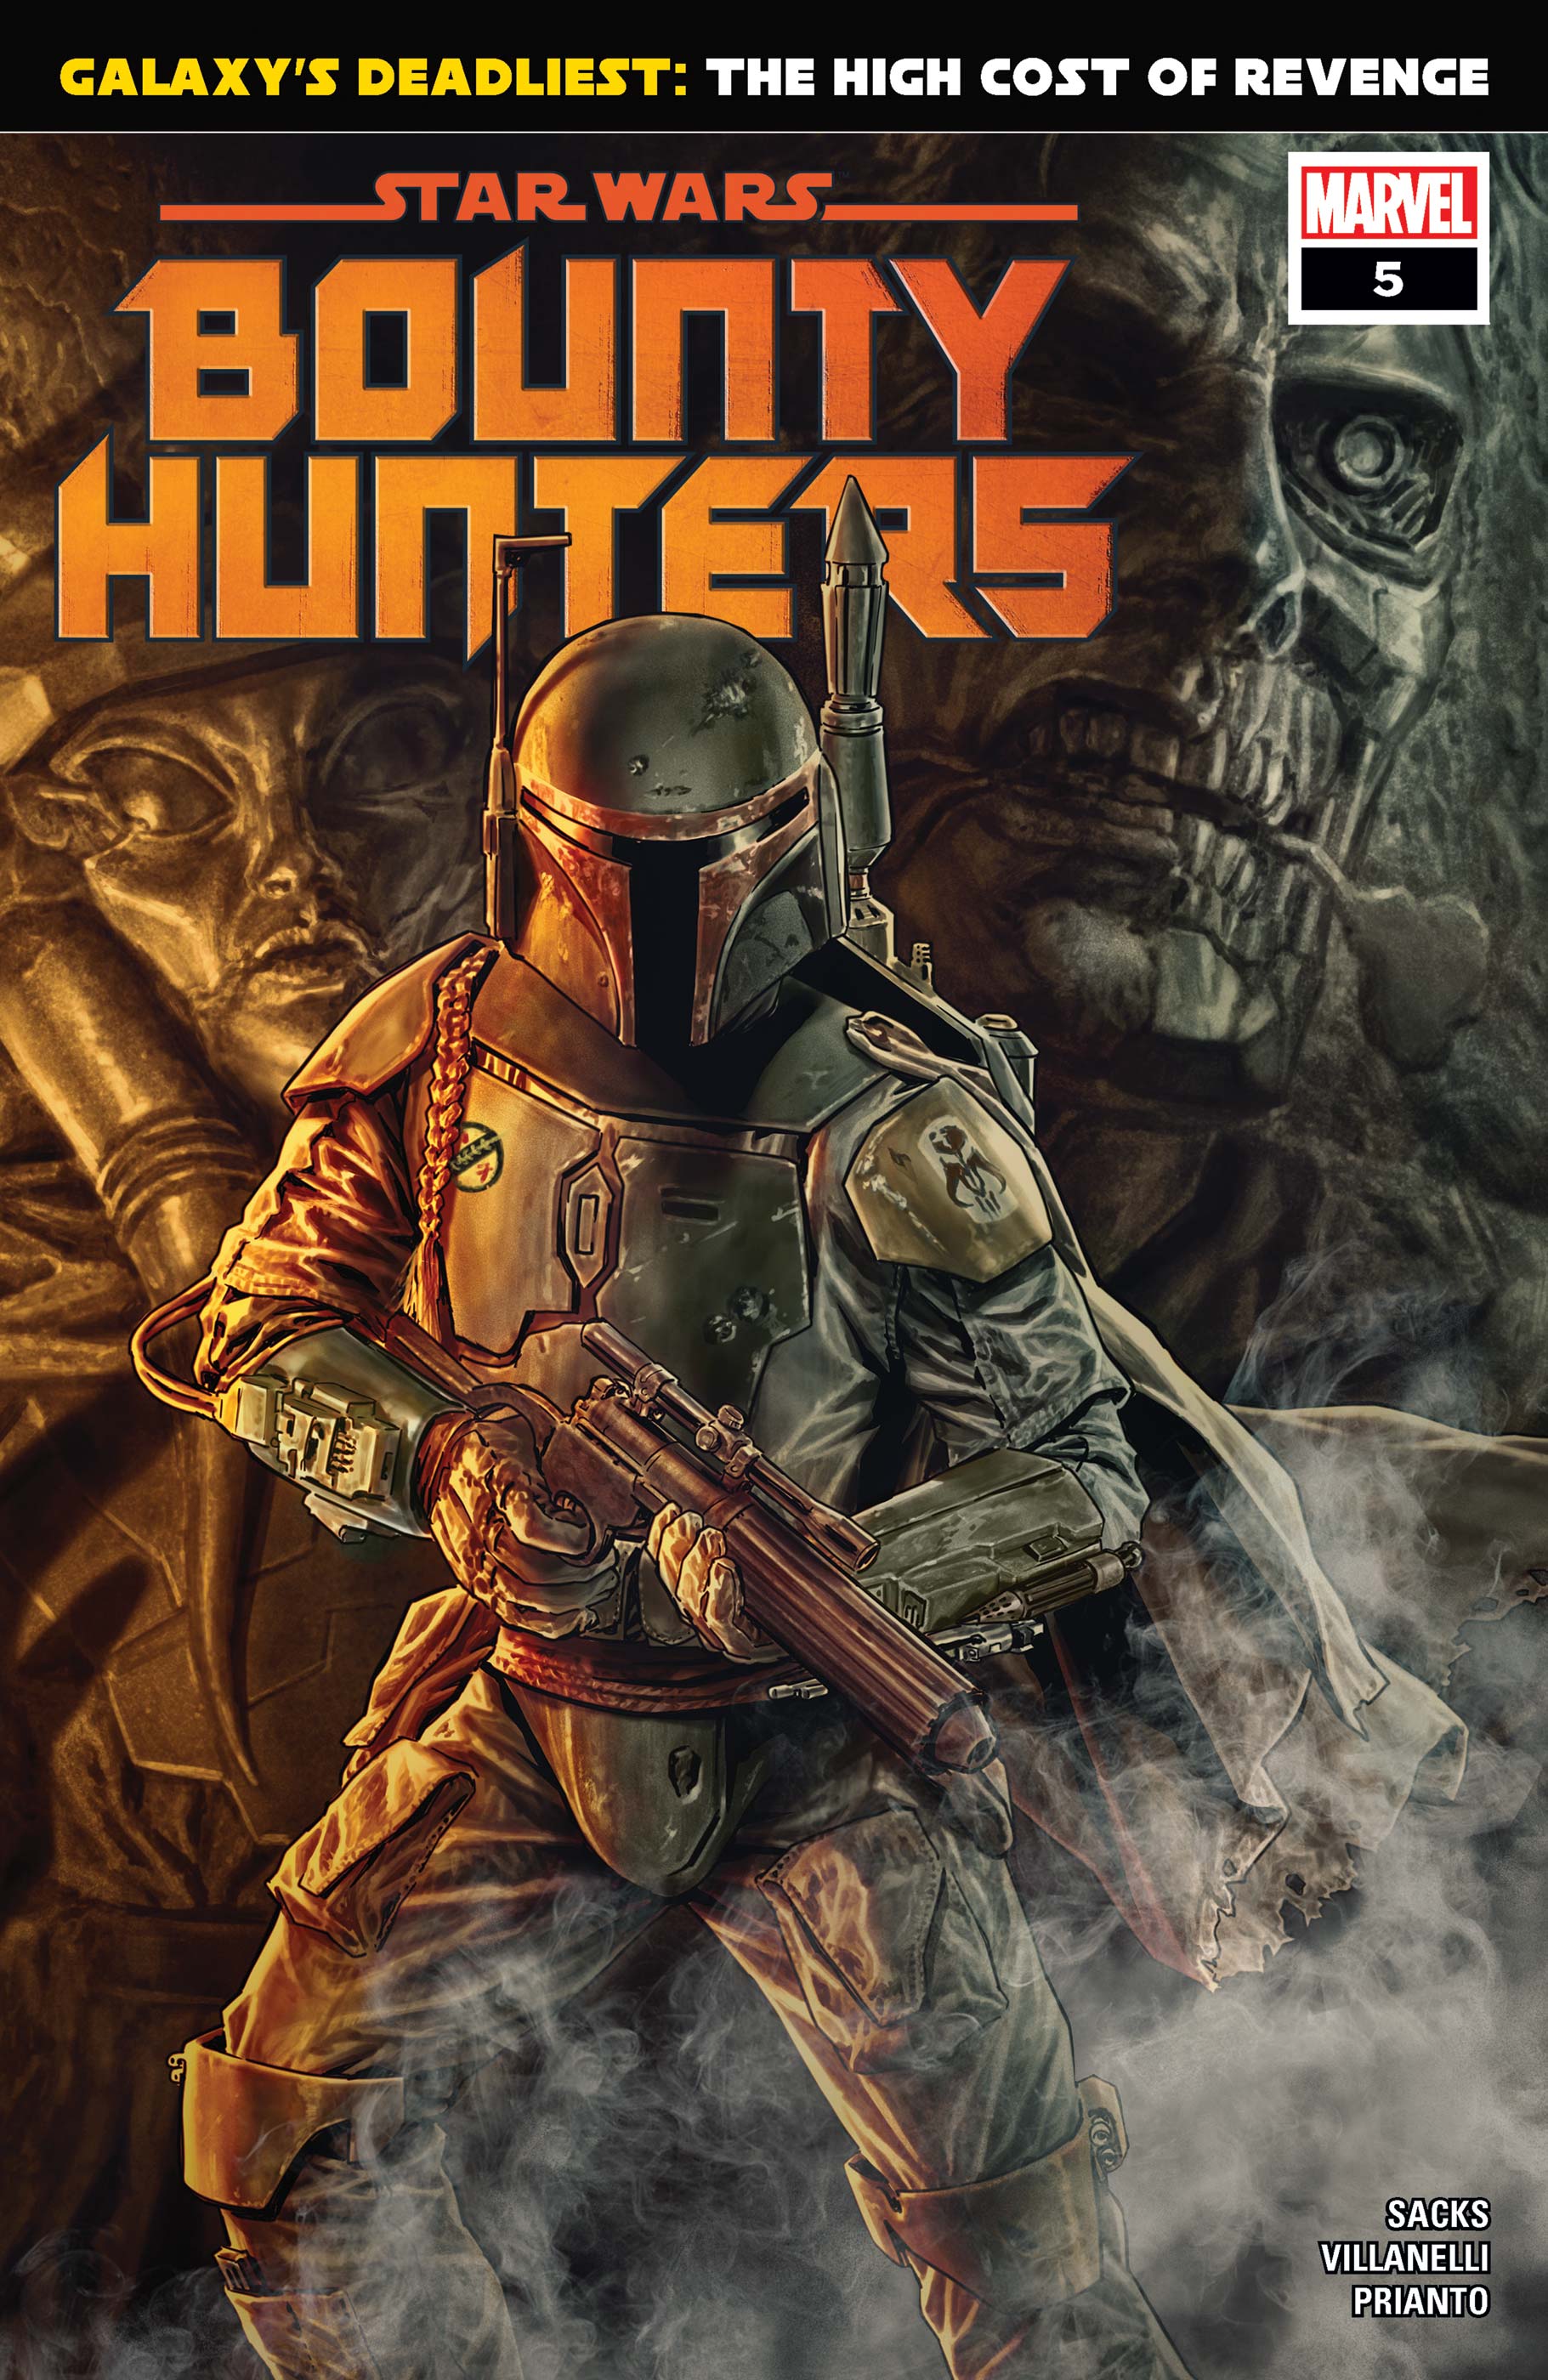 star wars hunters release date